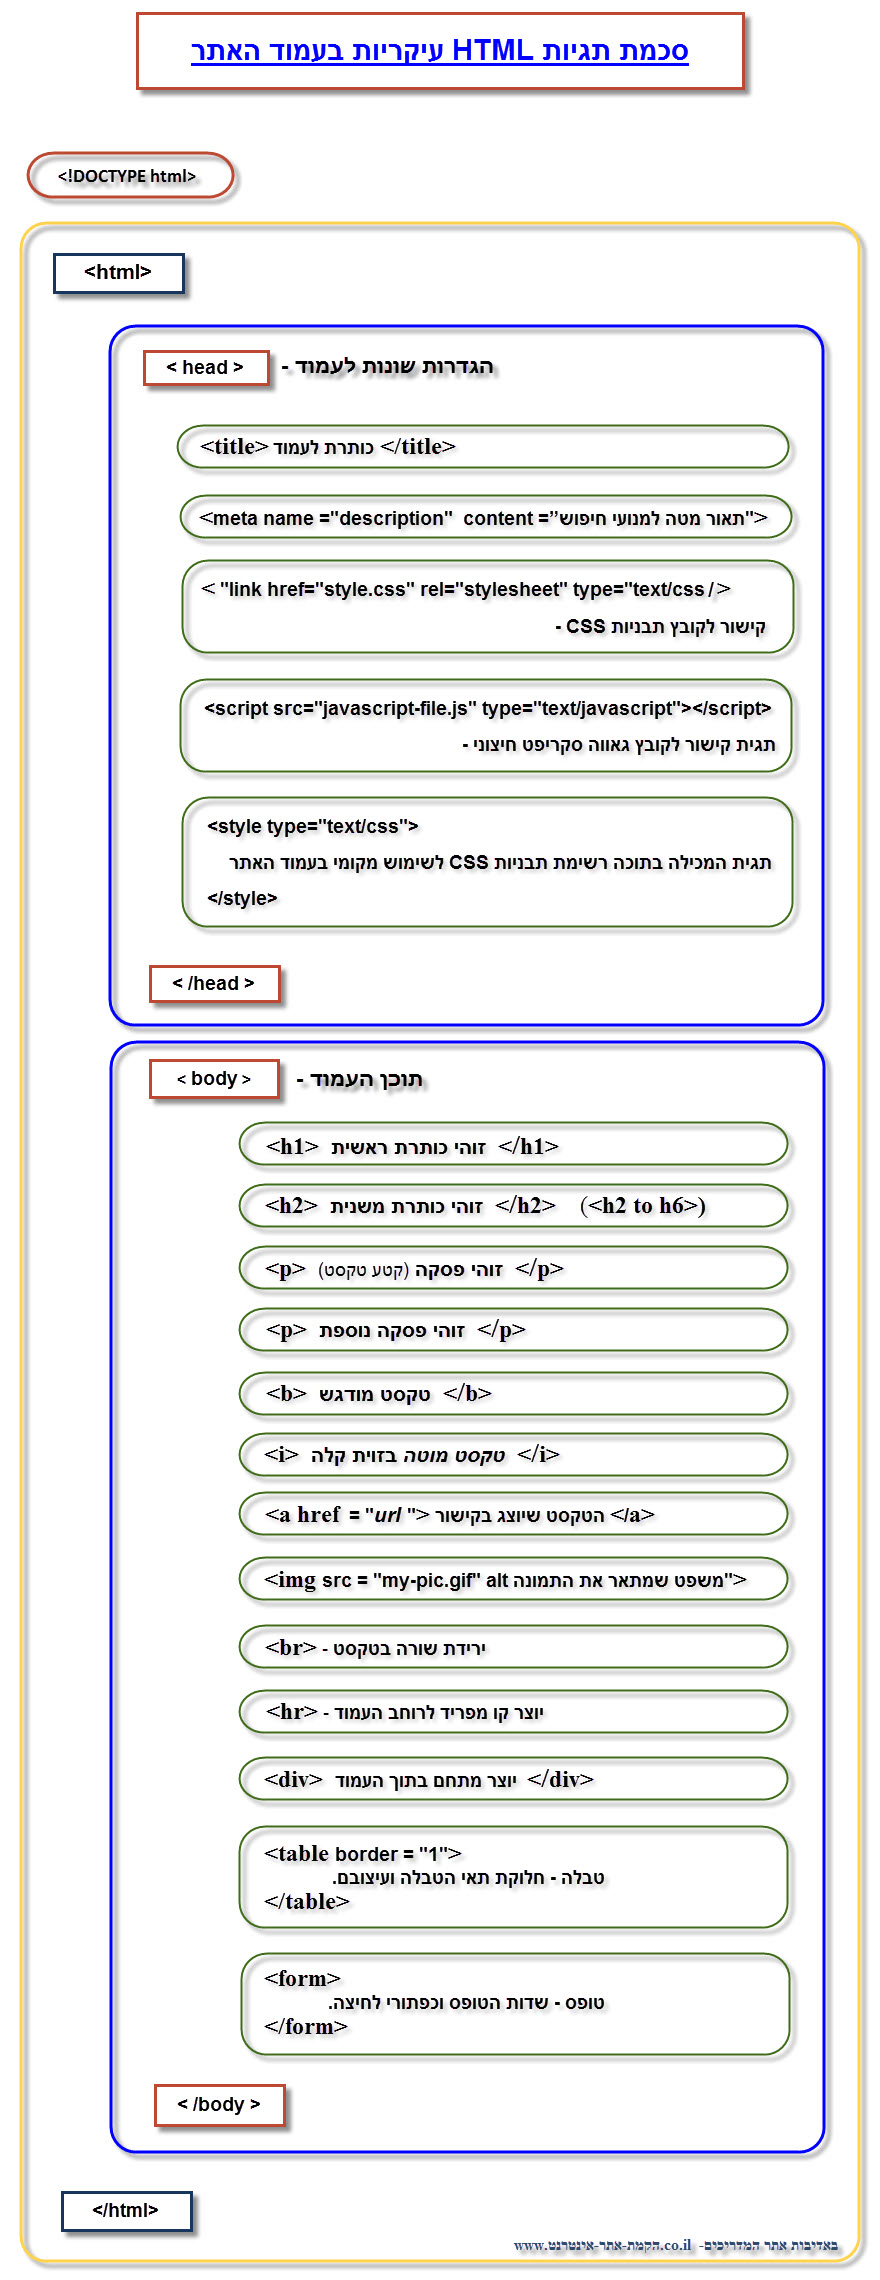 סכמת תגיות html עיקריות בעמוד האתר